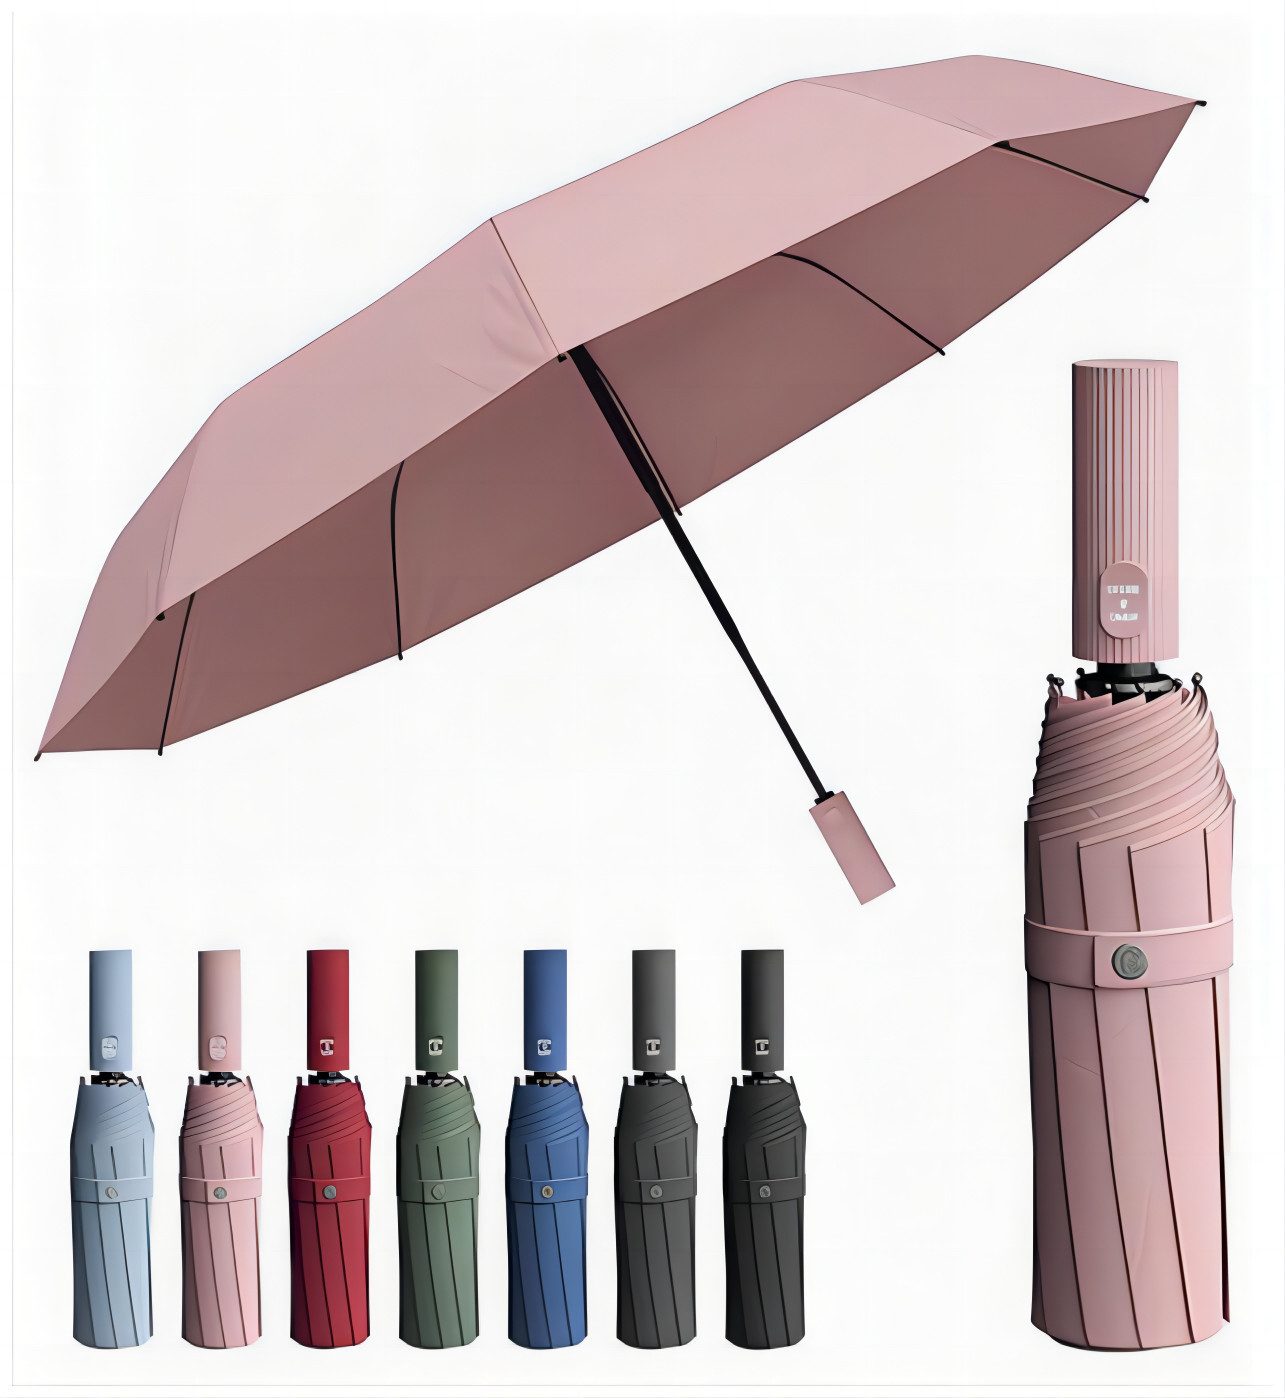 HEYHIPPO Taschenregenschirm Regenschirm, winddicht, kompakt,ABS-Griff, 10 Rippen, vollautomatischer Faltschirm, Regen- oder Sonnenscheinschirm